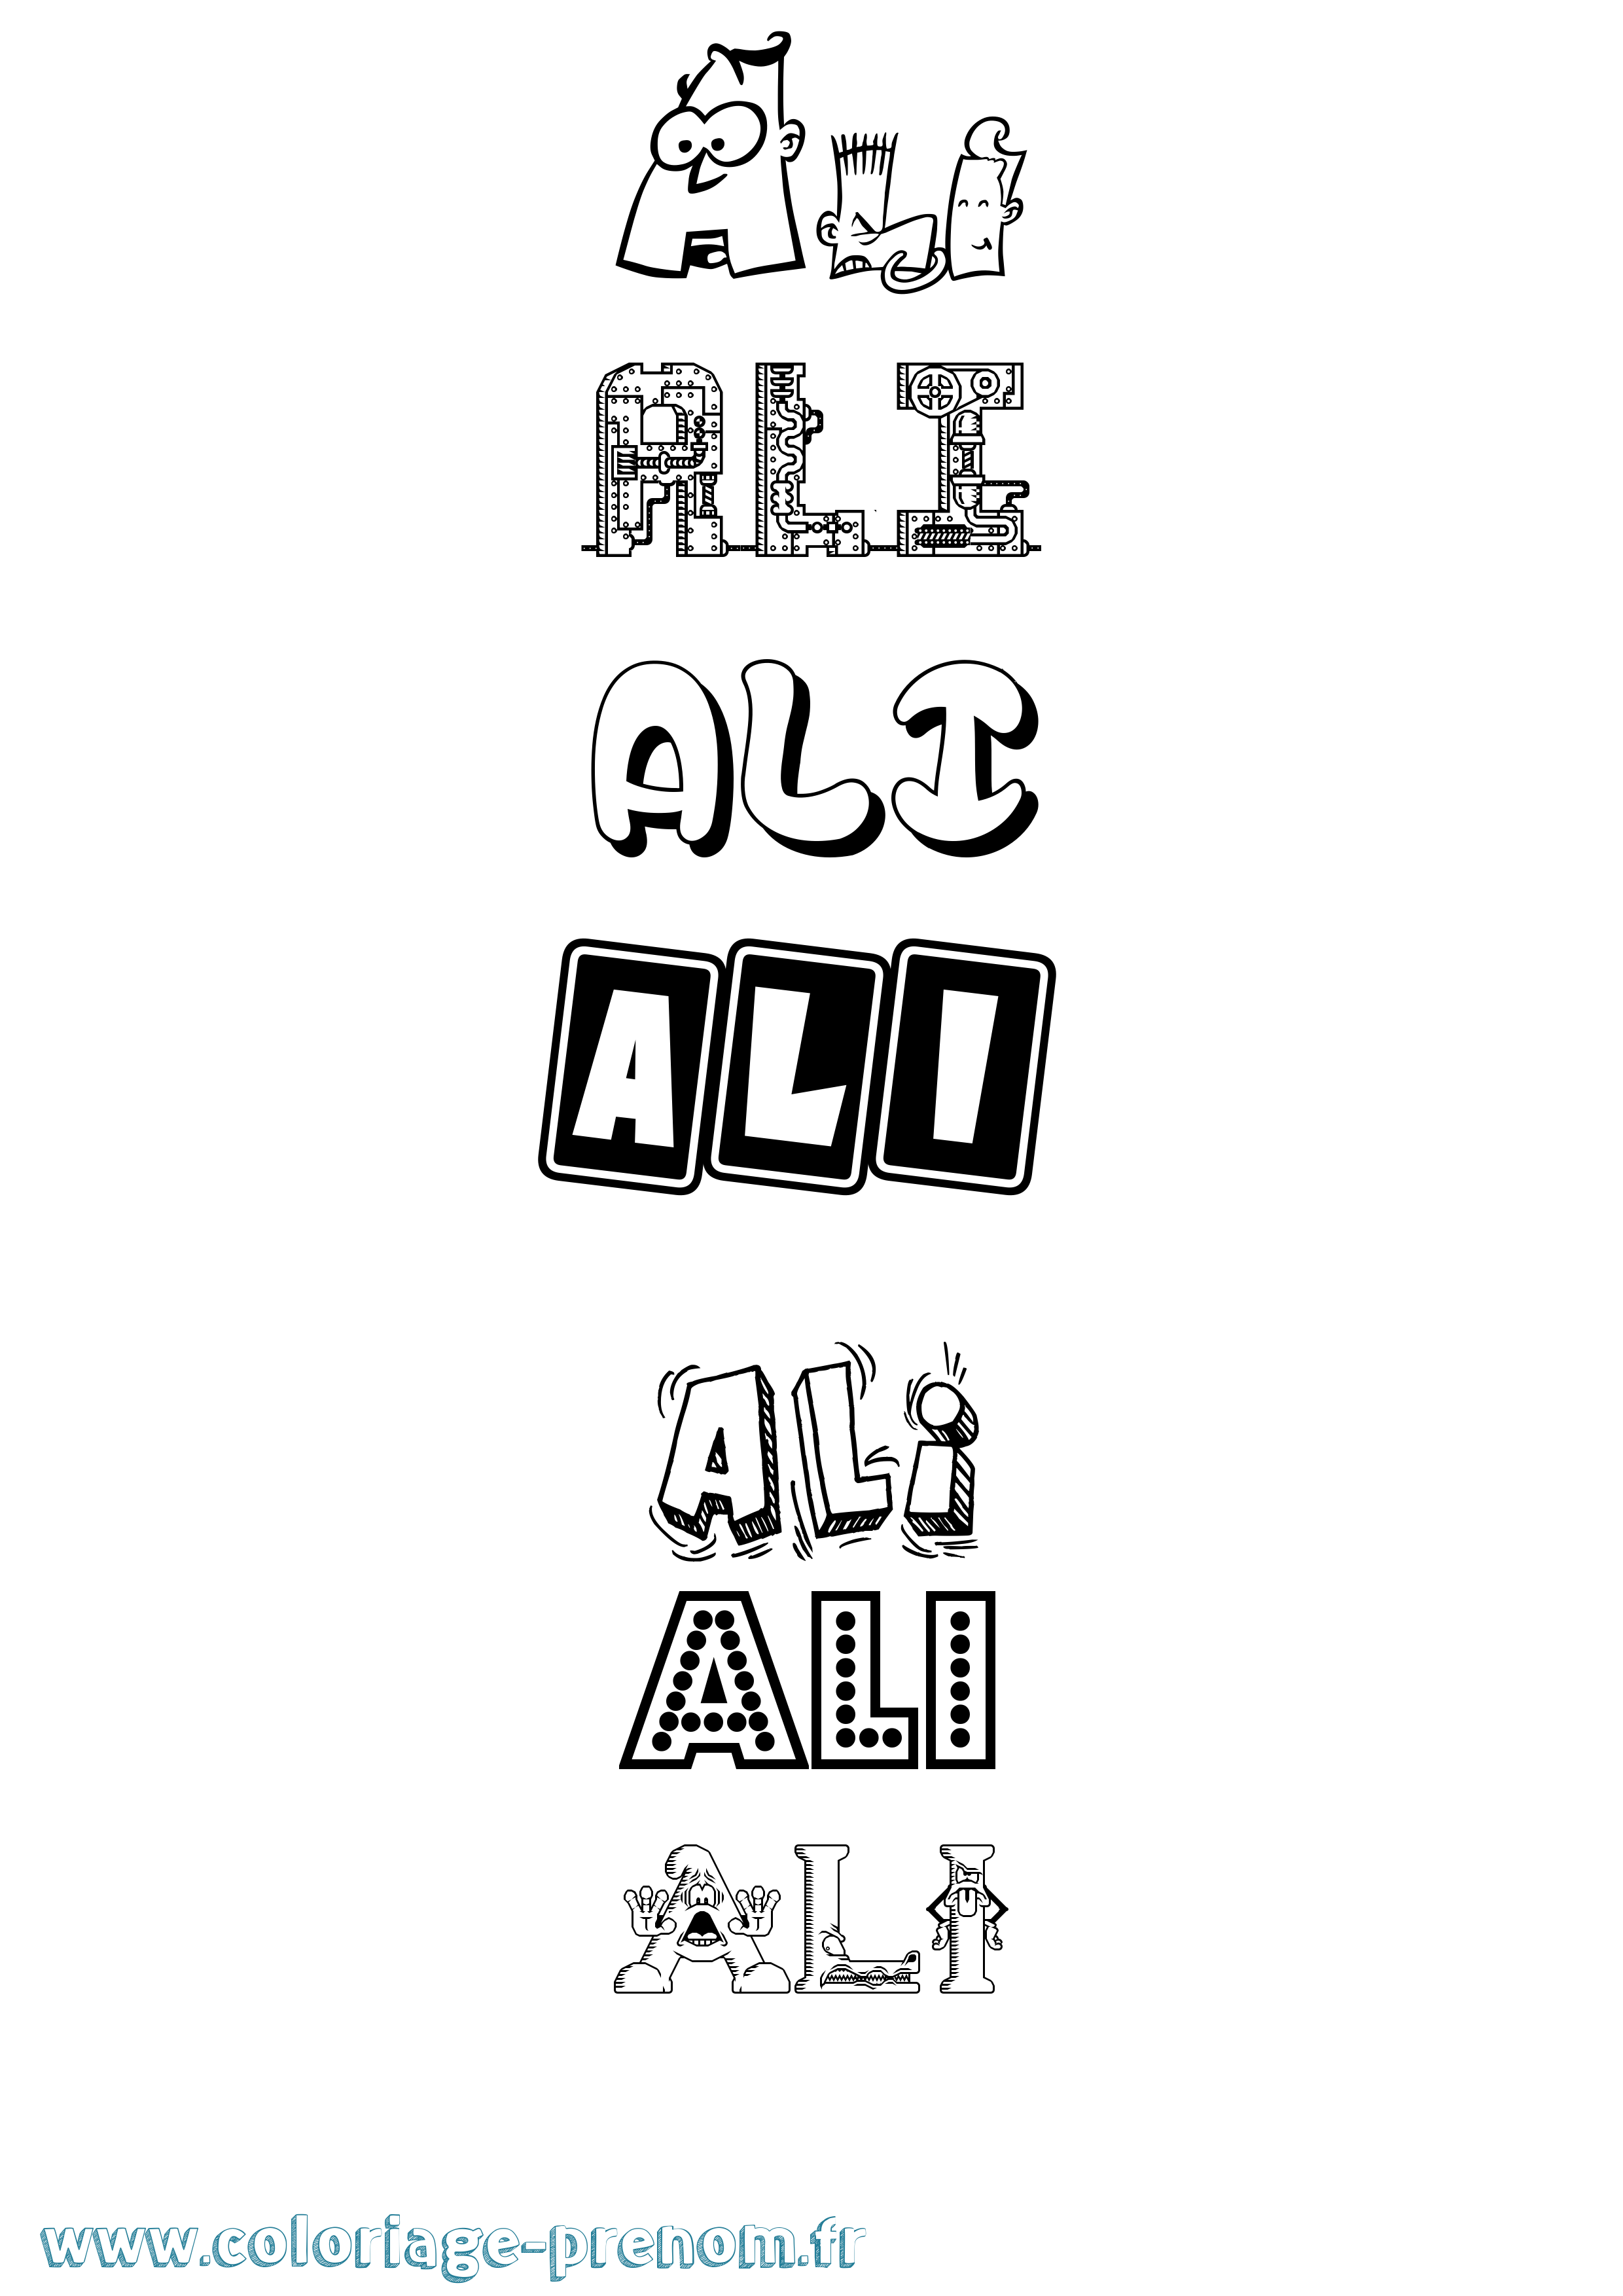 Coloriage prénom Ali Fun